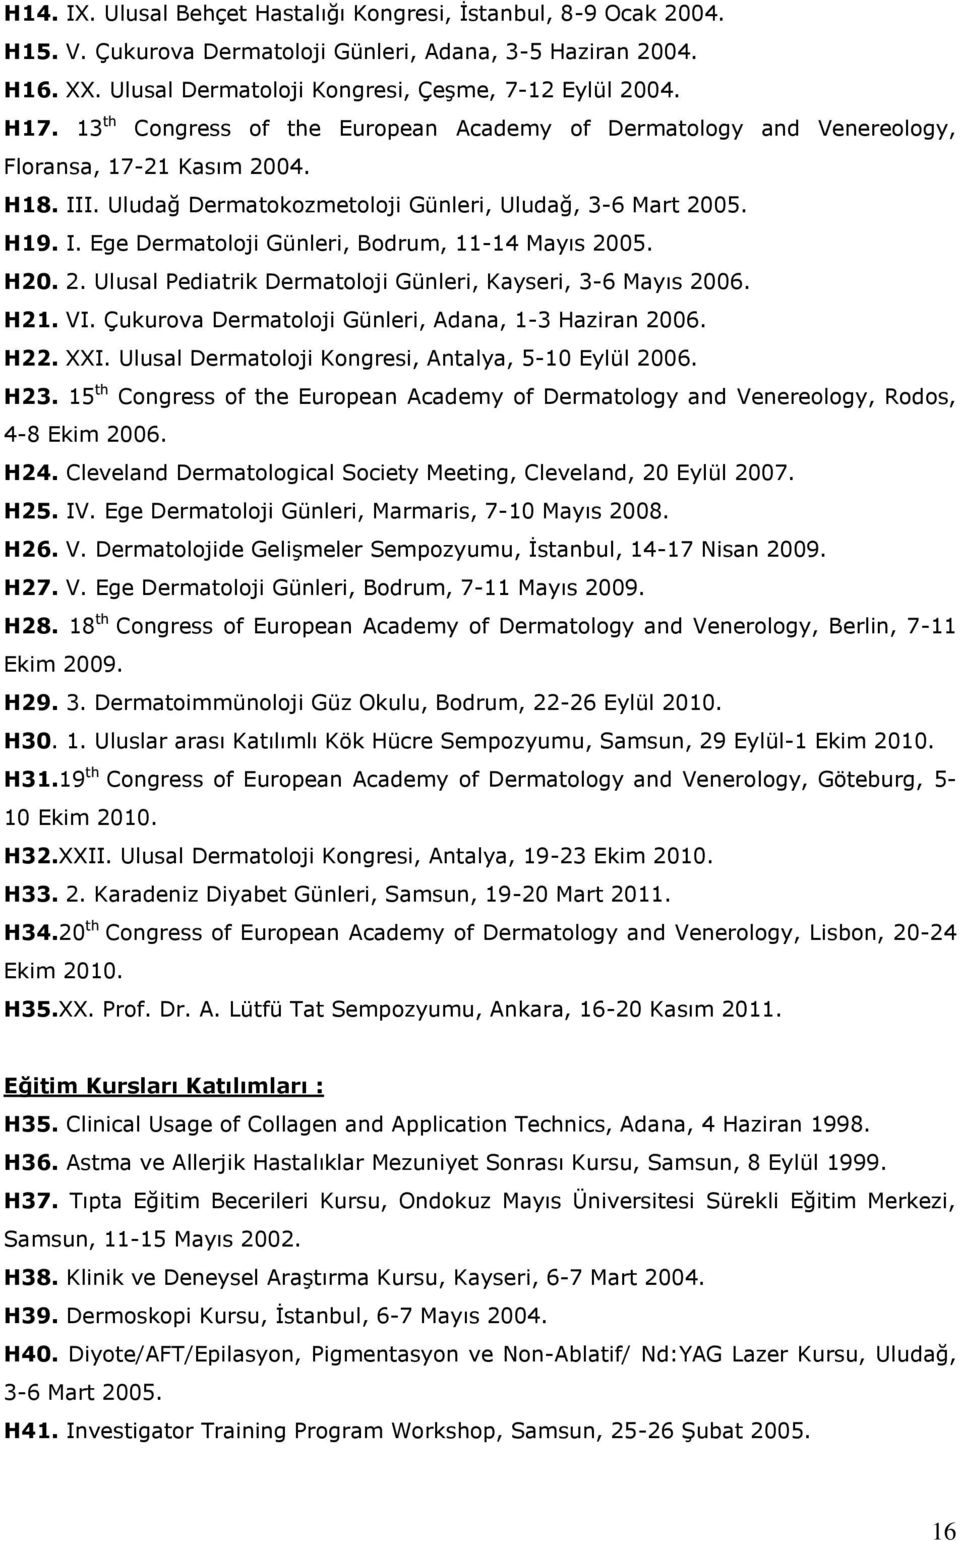 H20. 2. Ulusal Pediatrik Dermatoloji Günleri, Kayseri, 3-6 Mayıs 2006. H21. VI. Çukurova Dermatoloji Günleri, Adana, 1-3 Haziran 2006. H22. XXI. Ulusal Dermatoloji Kongresi, Antalya, 5-10 Eylül 2006.